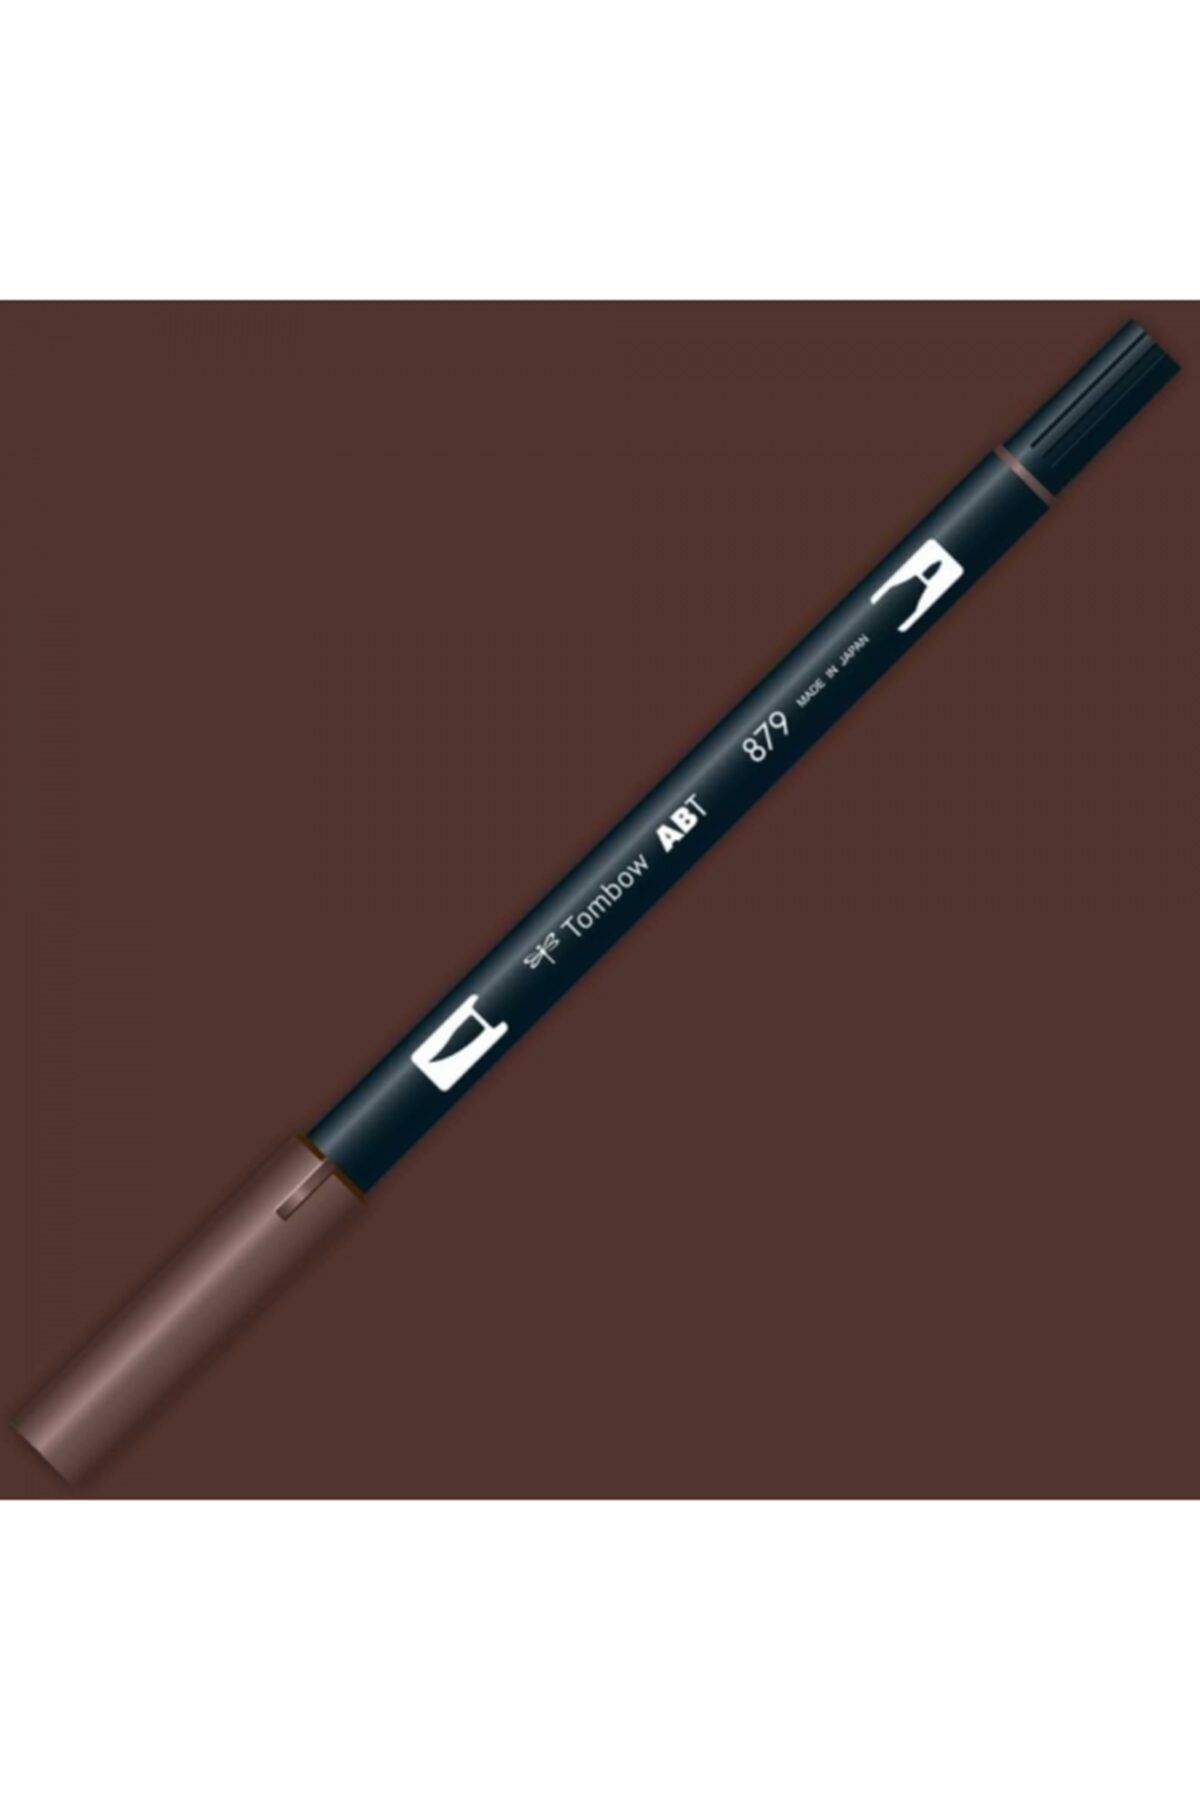 Tombow Ab-t Dual Brush Pen Grafik Kalemi - Brown